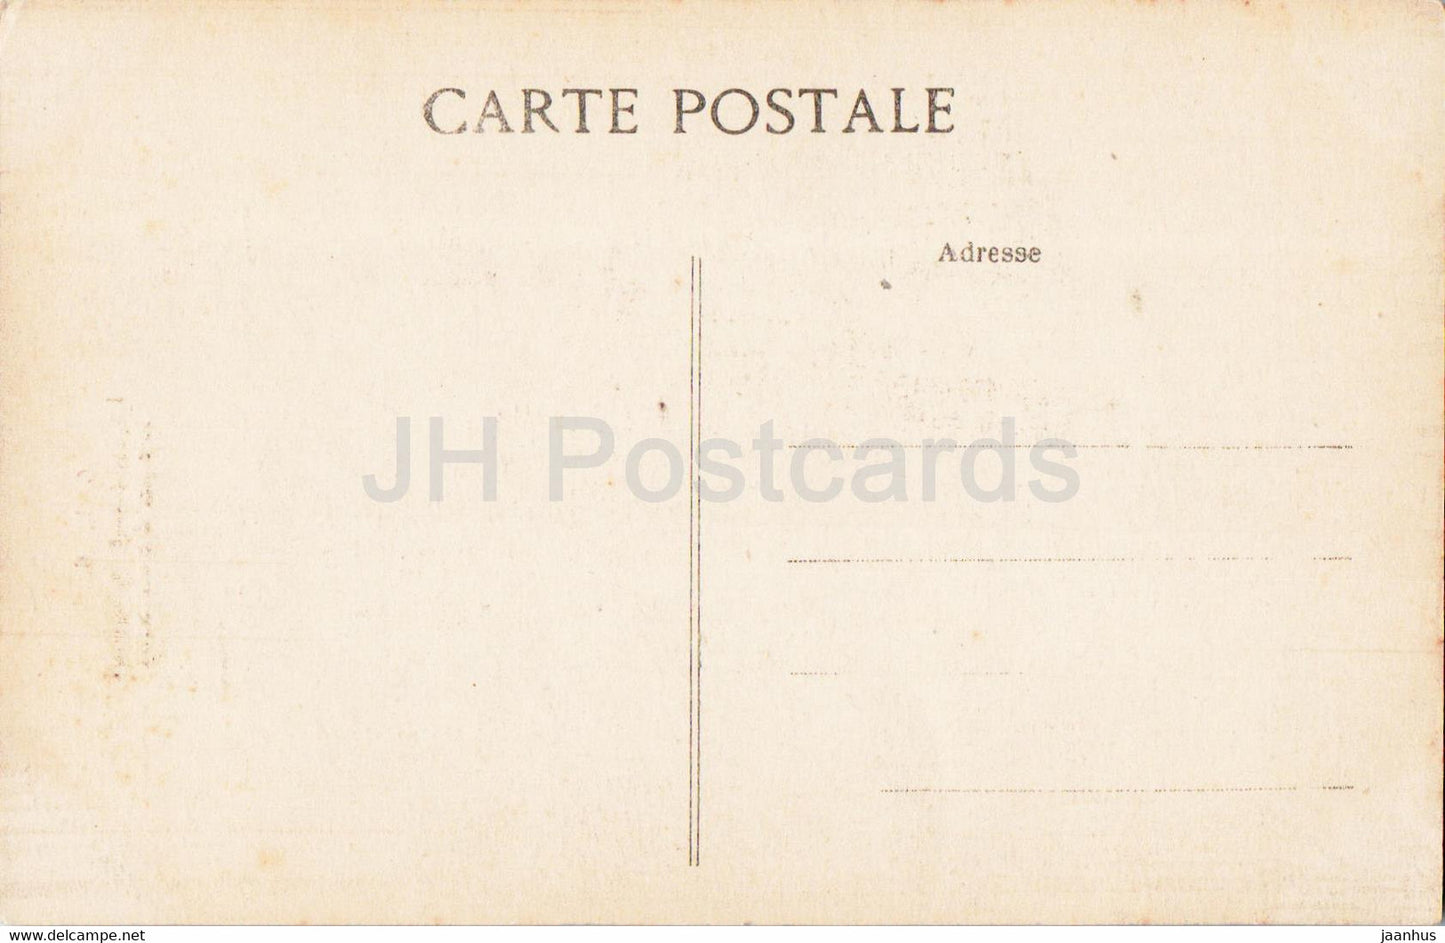 La Cathedrale de Rouen - Escalier des Libraires - 6 - old postcard - France - unused